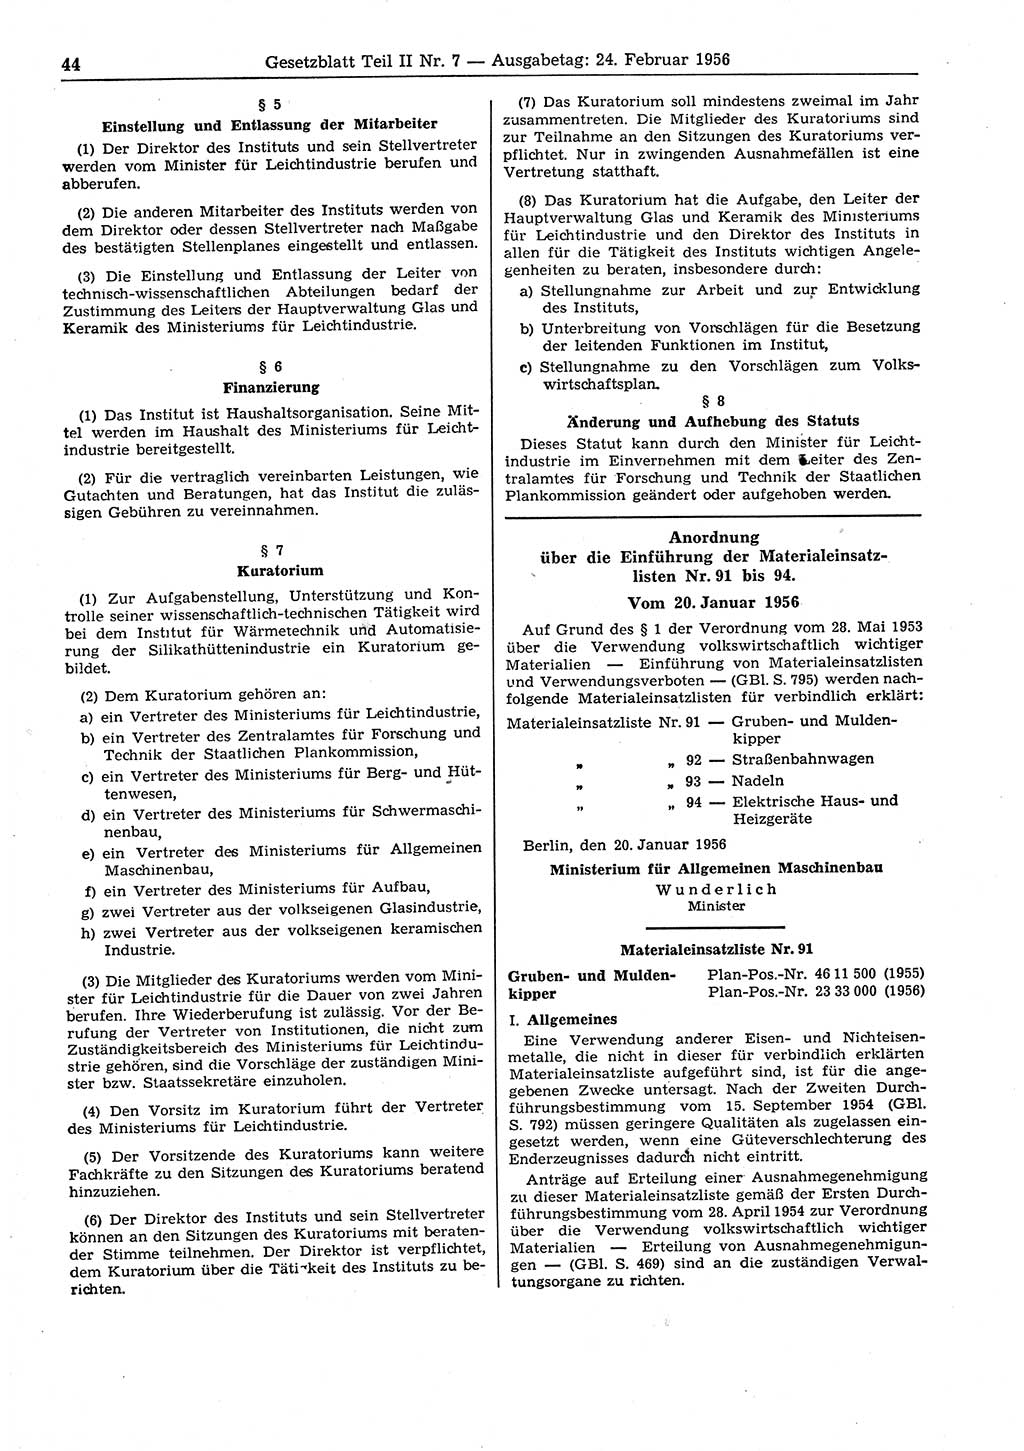 Gesetzblatt (GBl.) der Deutschen Demokratischen Republik (DDR) Teil ⅠⅠ 1956, Seite 44 (GBl. DDR ⅠⅠ 1956, S. 44)